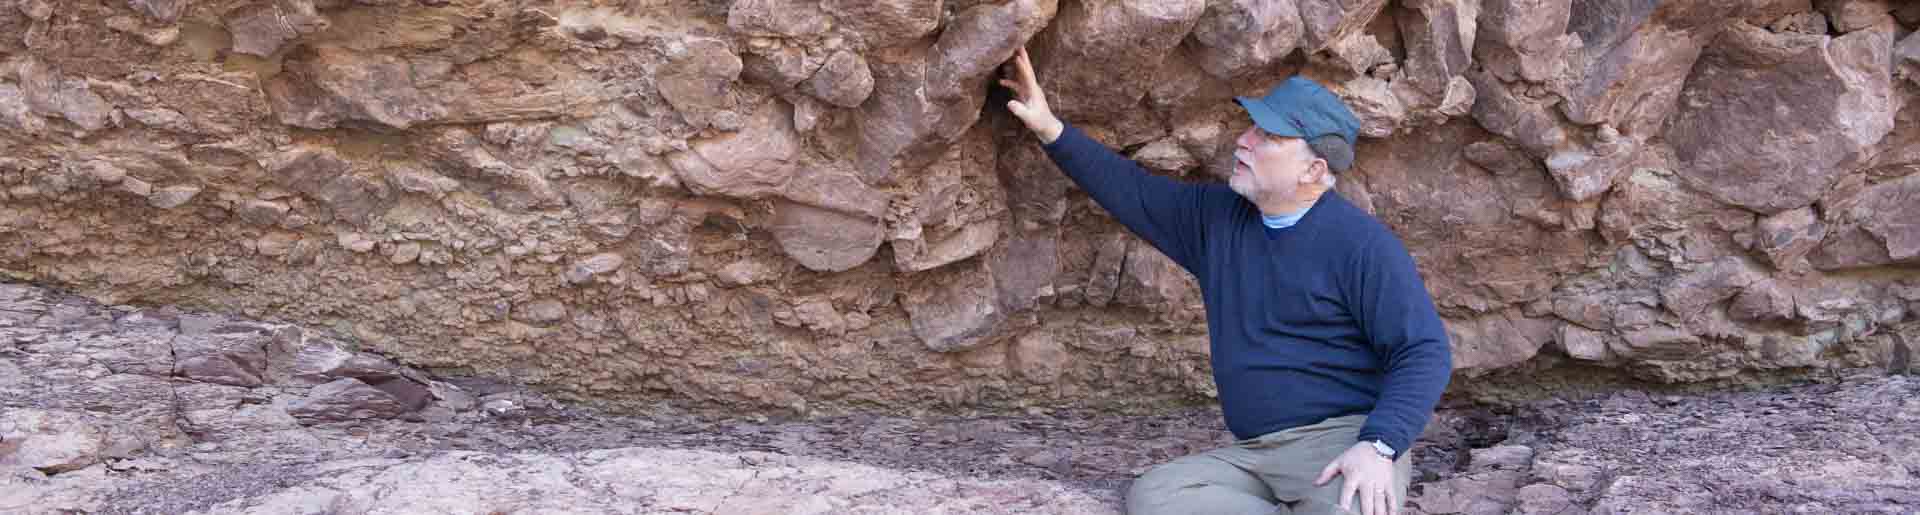 Dr. Whitmore at the Grand Canyon examining rocks.